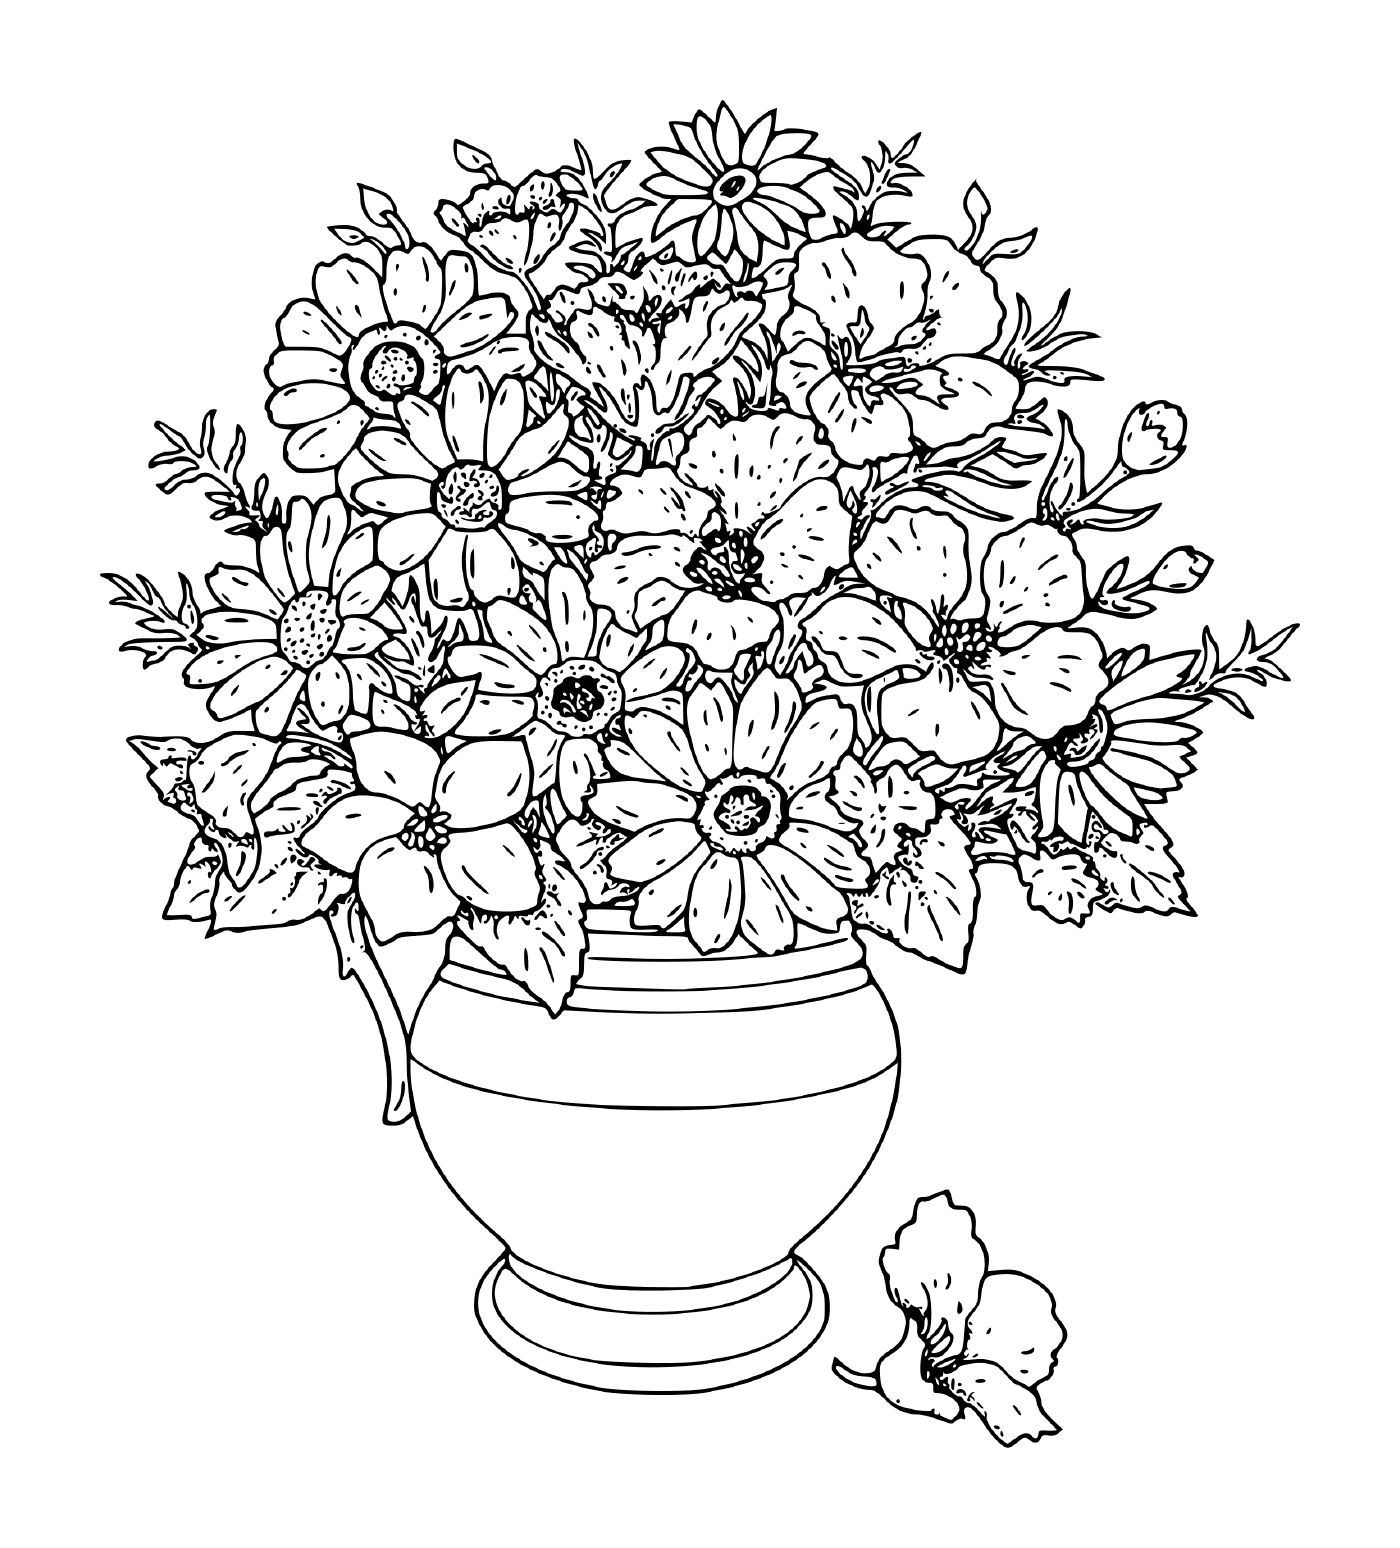  Blumen in einer Vase 